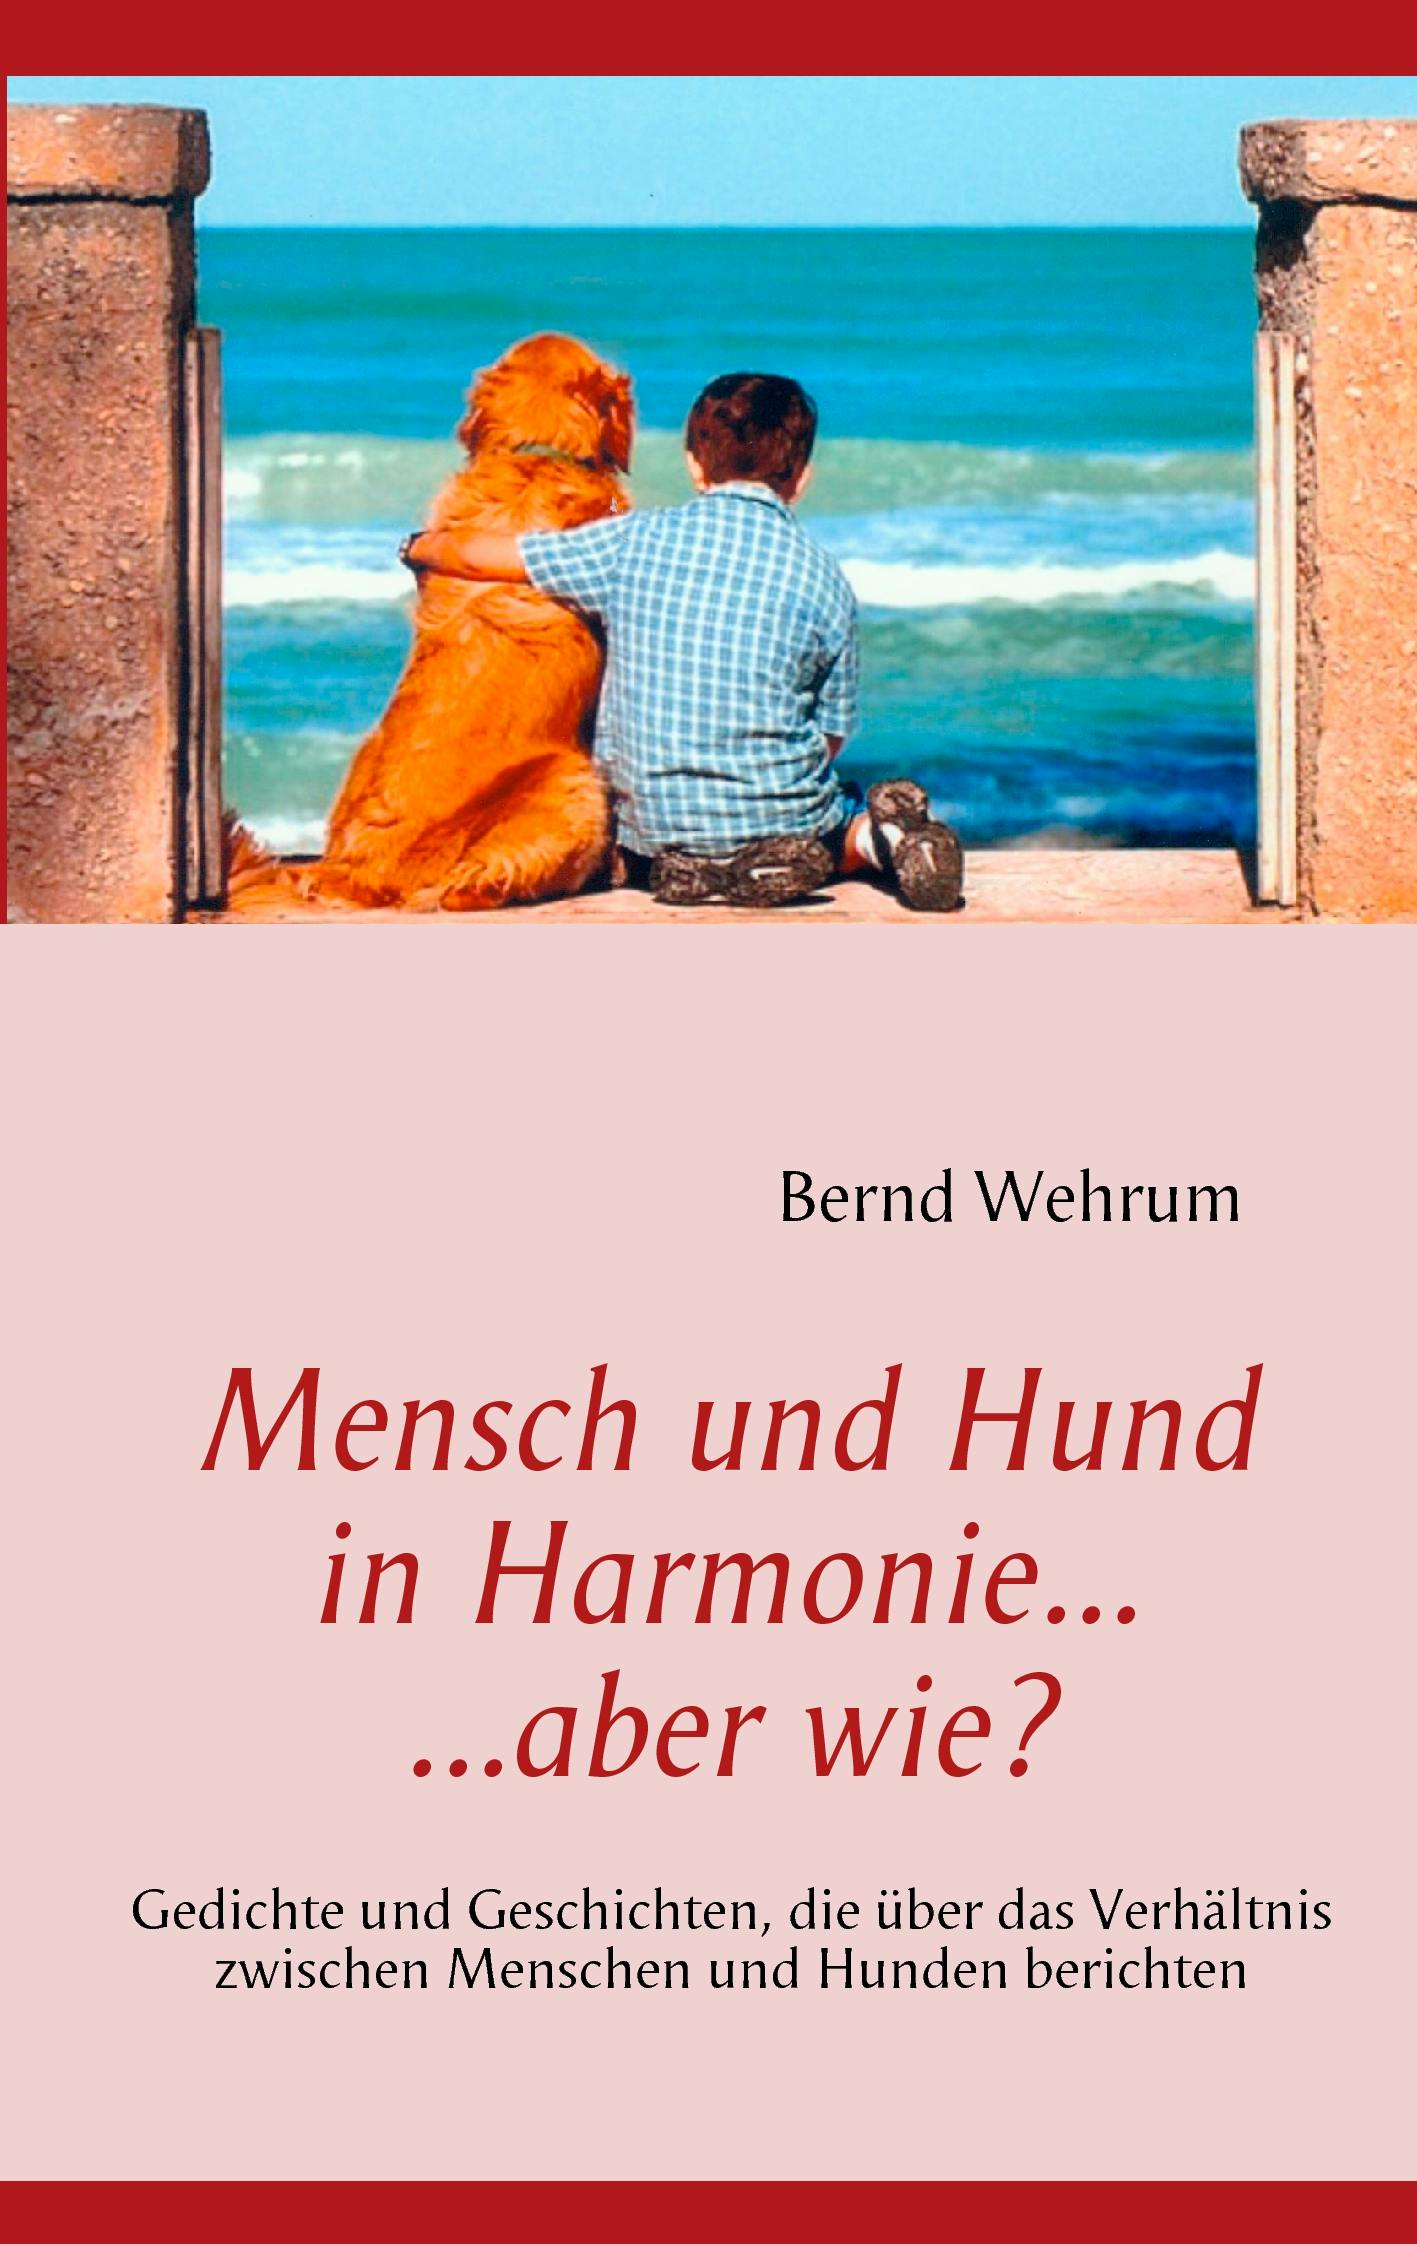 Mensch und Hund in Harmonie, aber wie? - Bernd Wehrum